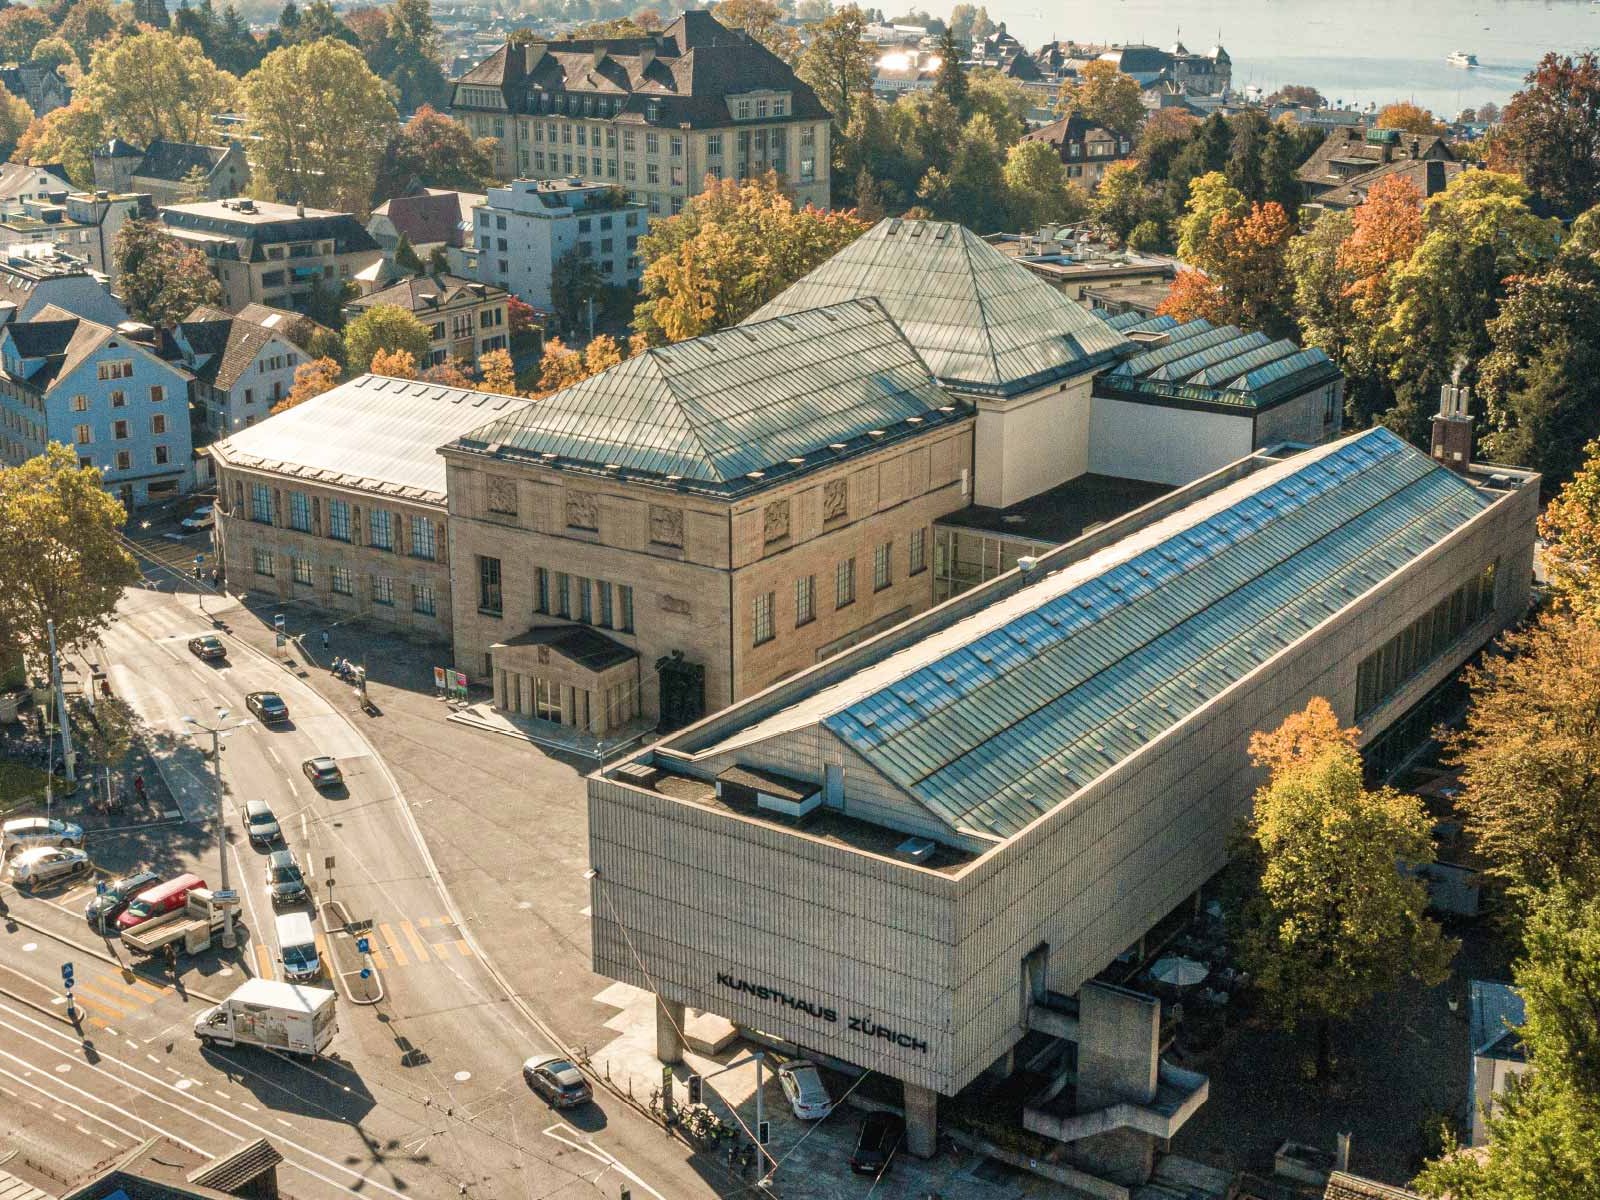 Rund um das Kunsthaus Zürich&nbsp;ist über die Jahre ein wahres Kunstviertel entstanden. Die neu eröffnete Erweiterung dürfte das zusätzlich befeuern.